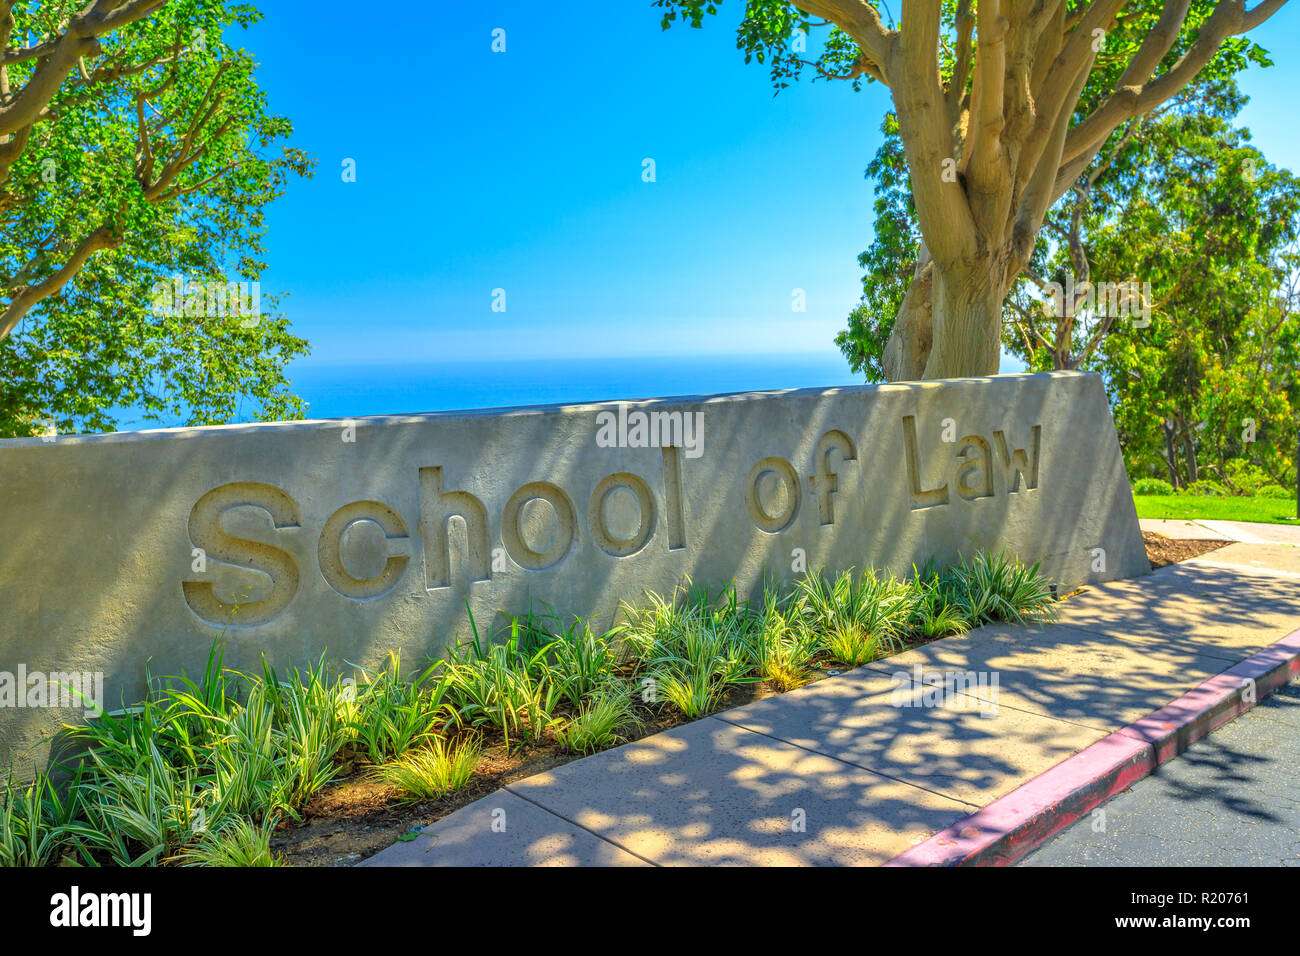 Malibu, California, United States - 7 août 2018 : l'École de droit de signer dans un campus, Pepperdine University américaine privée à Malibu, en Californie. Le campus principal donnant sur l'océan Pacifique. Banque D'Images